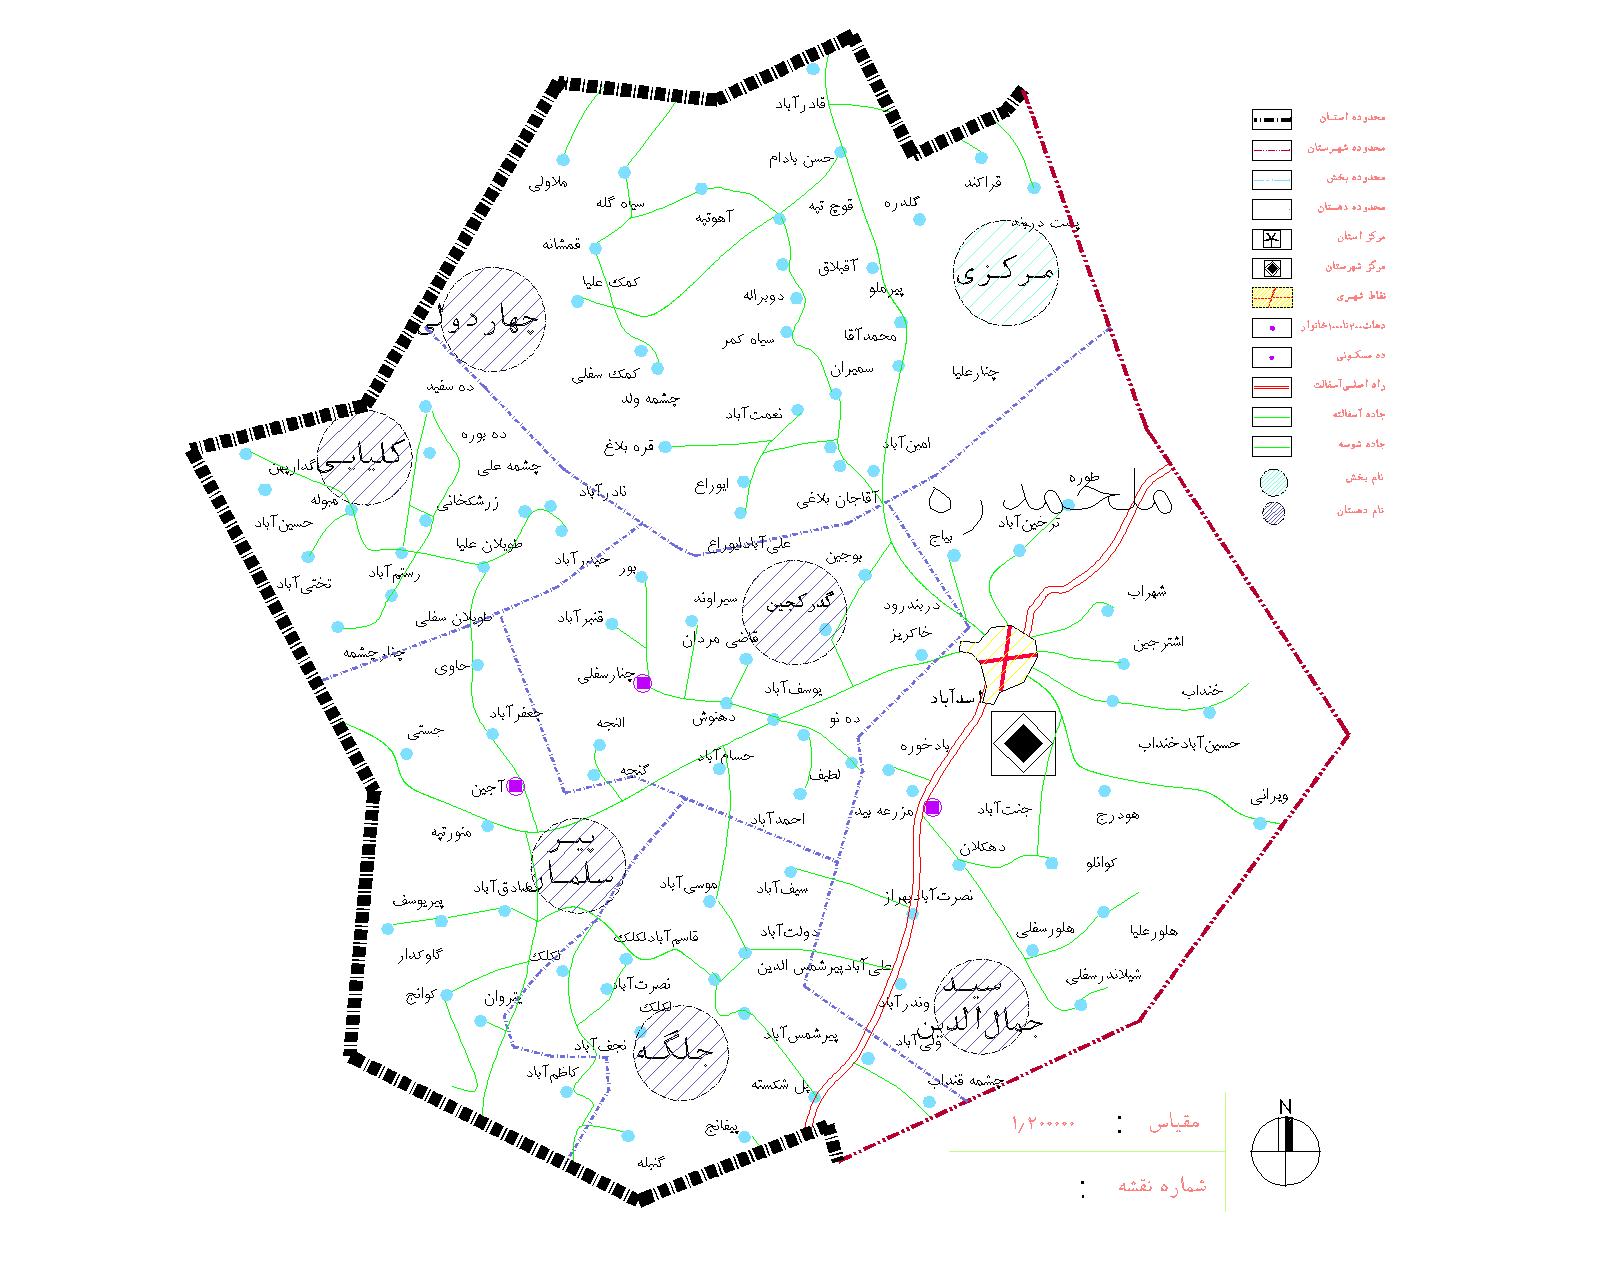 دانلود نقشه اتوکدی شهرستان اسدآباد - استان همدان - فایل کده: فروشگاه همه!